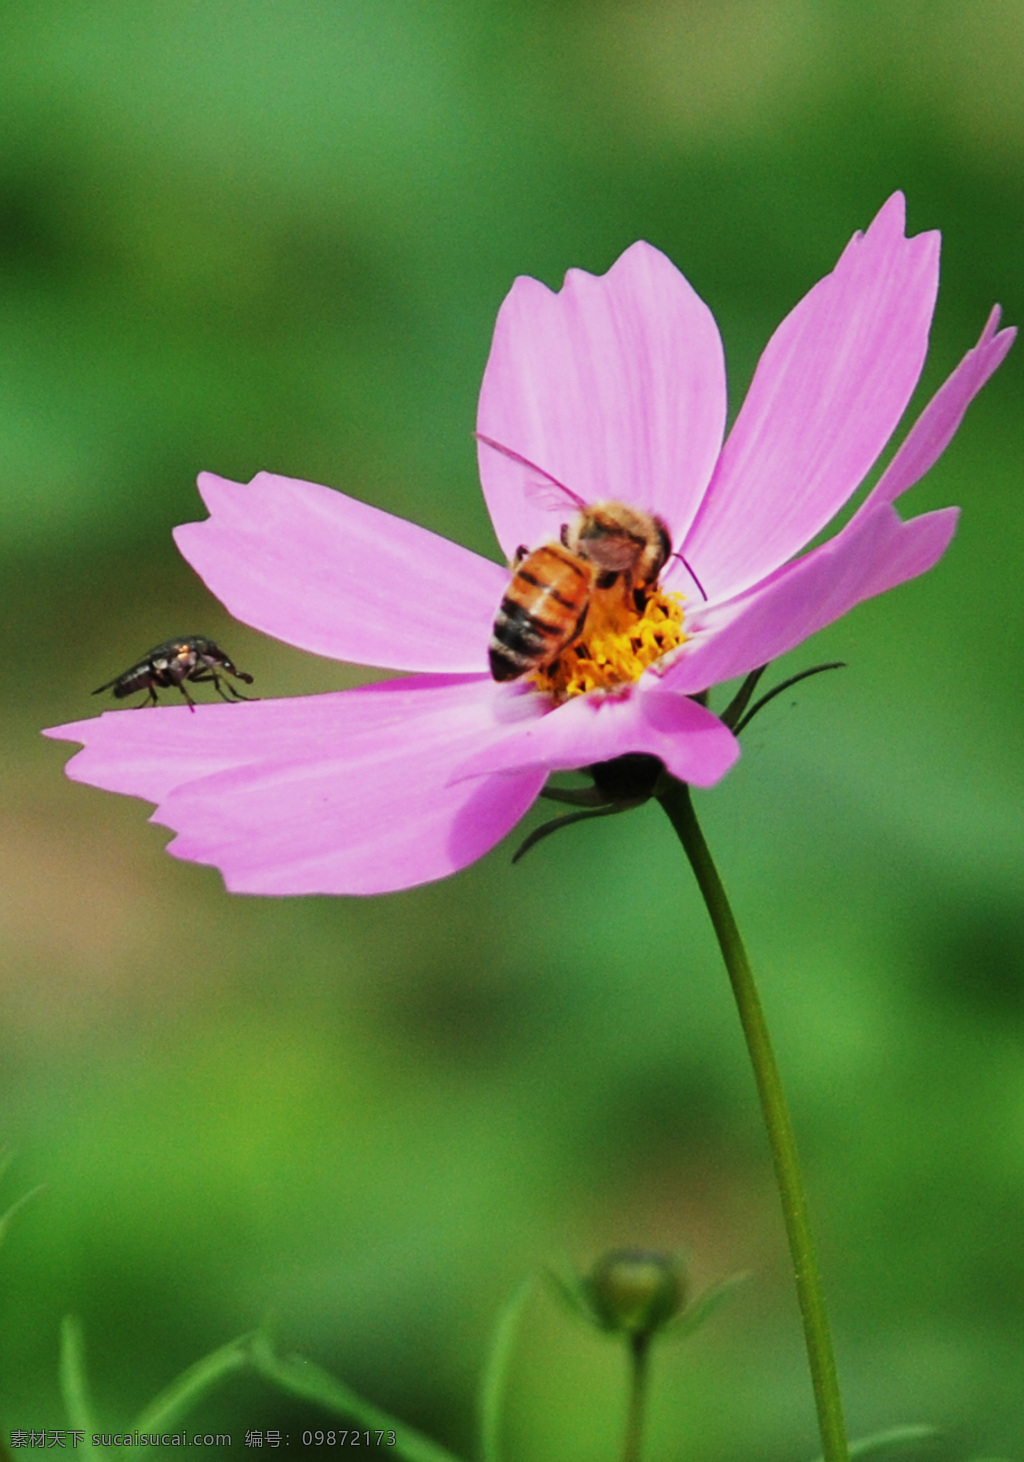 昆虫 波斯菊 红花 花 精灵 蜜蜂 勤劳 昆虫与波斯菊 小虫子 与花共舞 生物世界